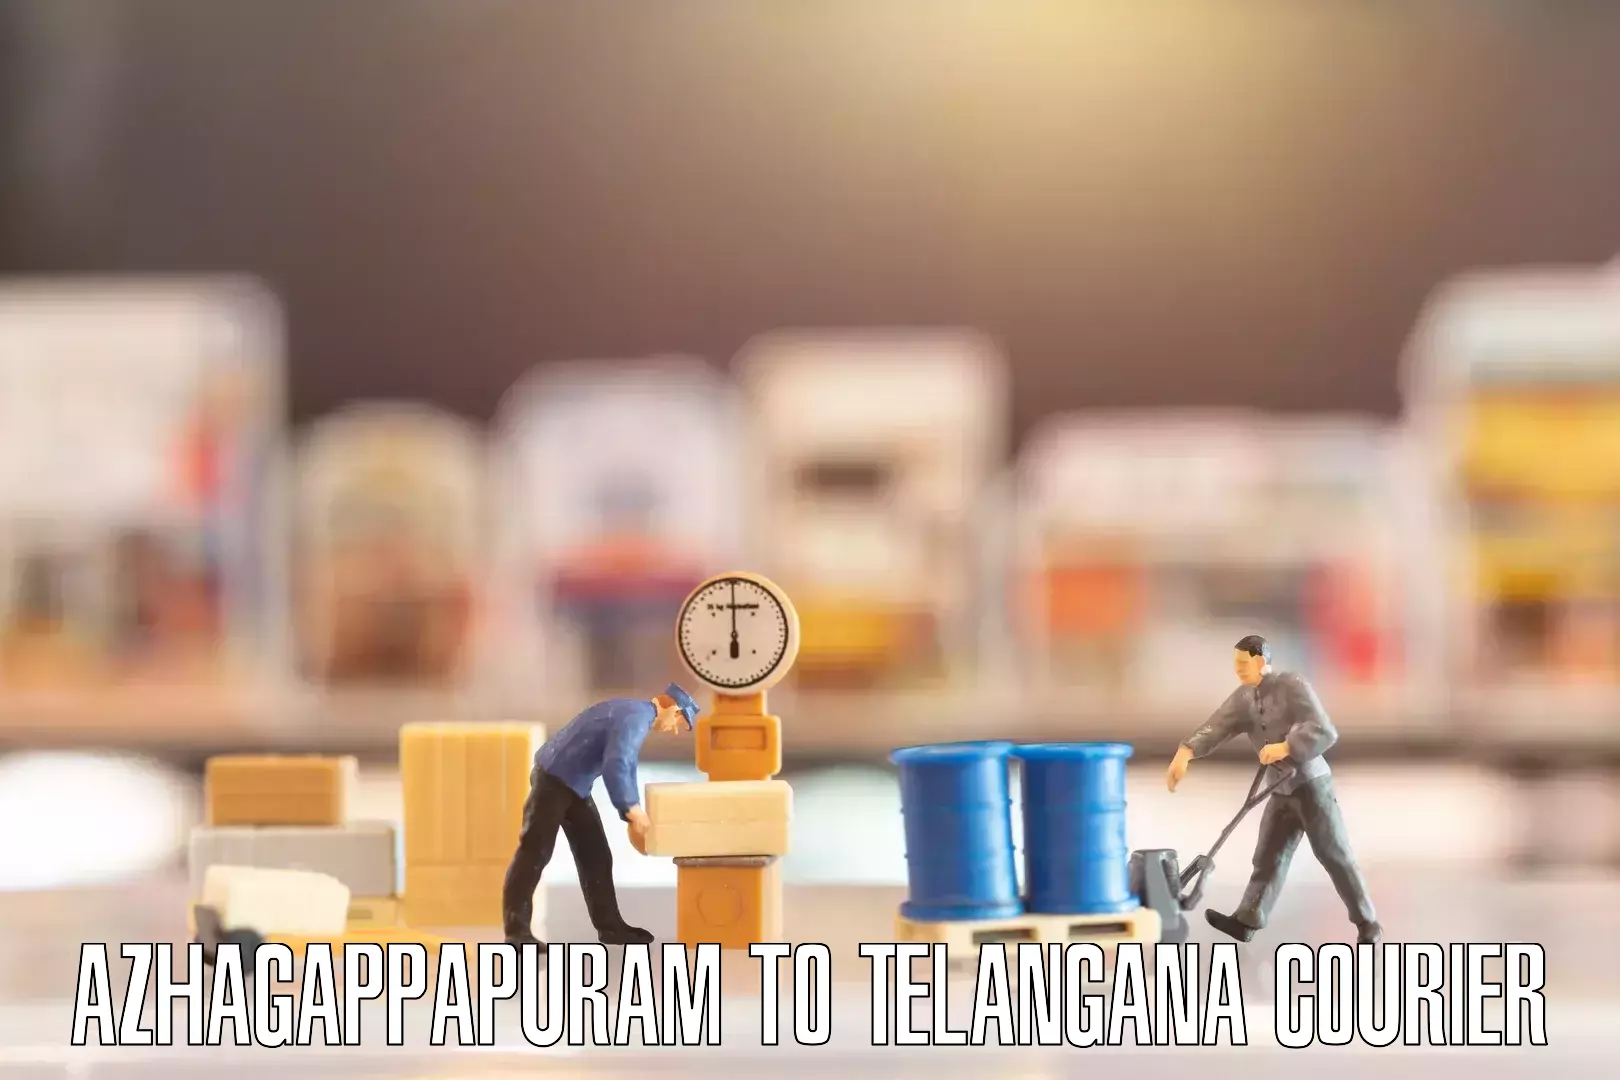 Professional movers and packers Azhagappapuram to Bhadrachalam